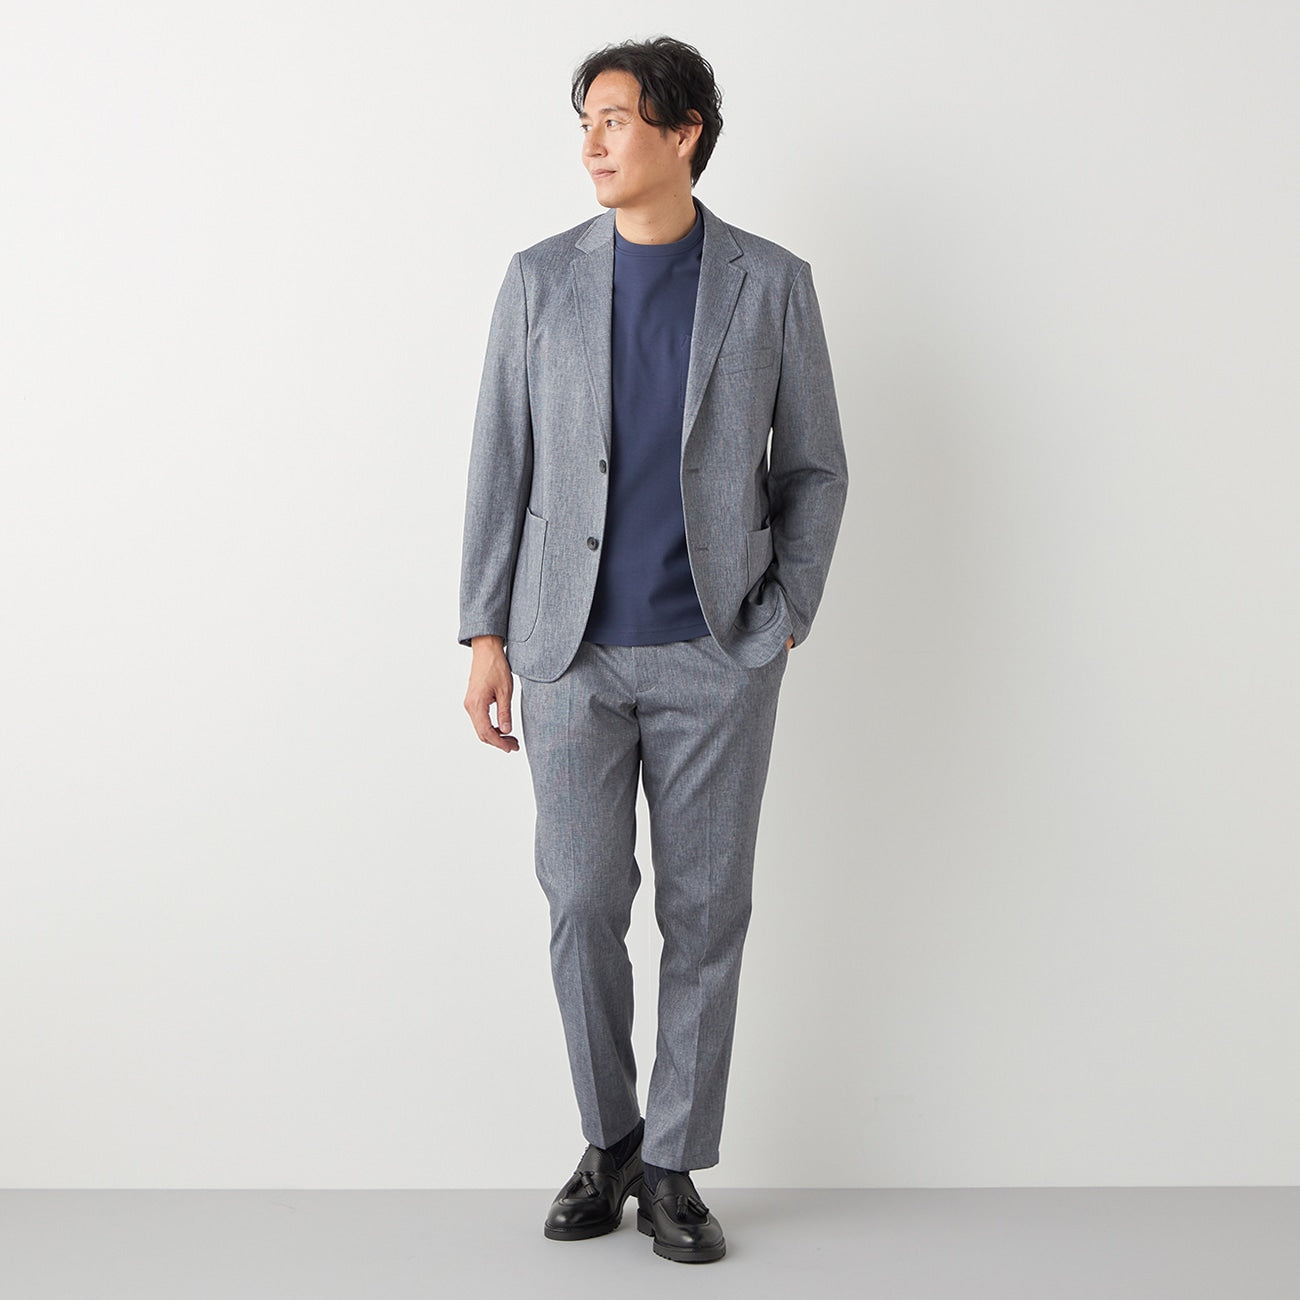 [睡衣套裝]Printed Jersey Gray 外套